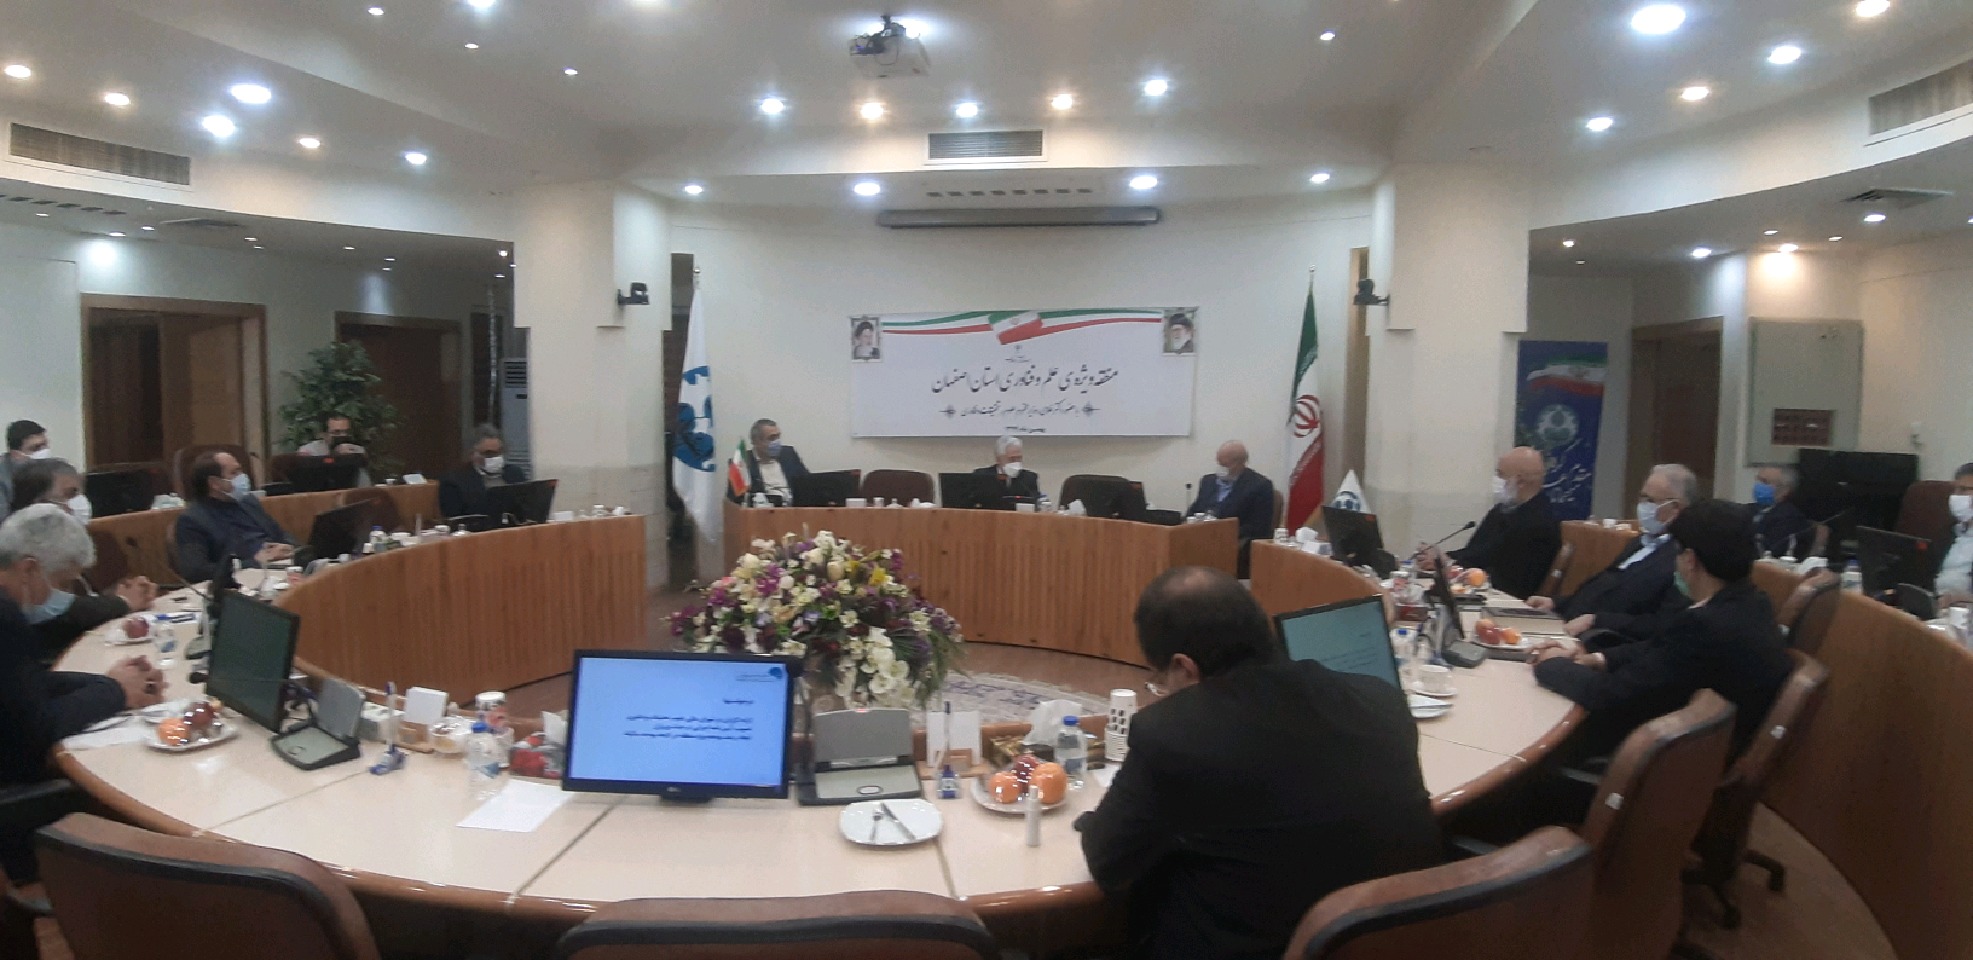 اصفهان  مناسب برای عملی سازی علوم دانشگاهی